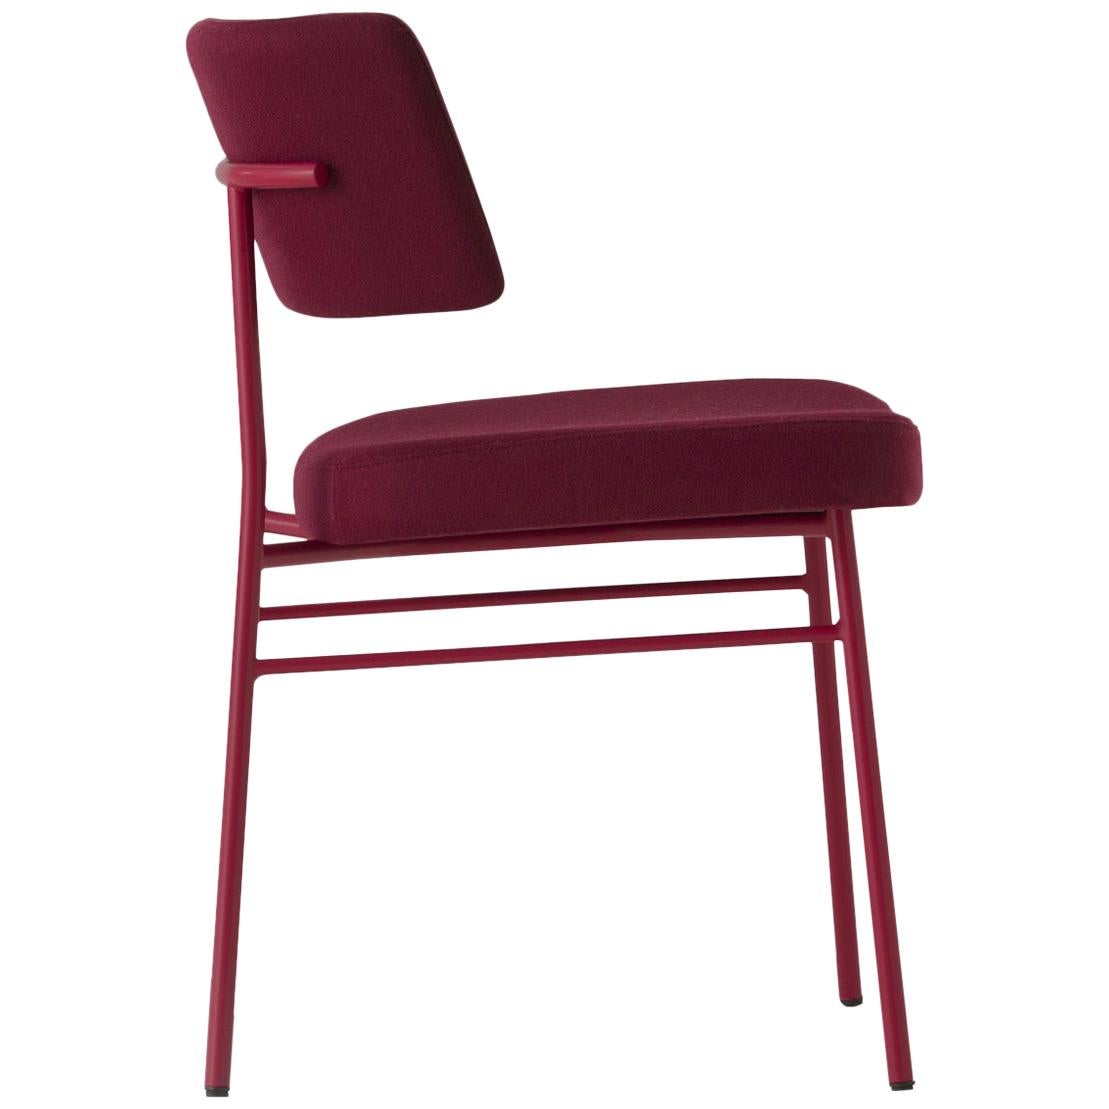 Marlen-Stuhl, rot, für den Innenbereich, Stuhl, Made in Italy, zu Hause, Objekt